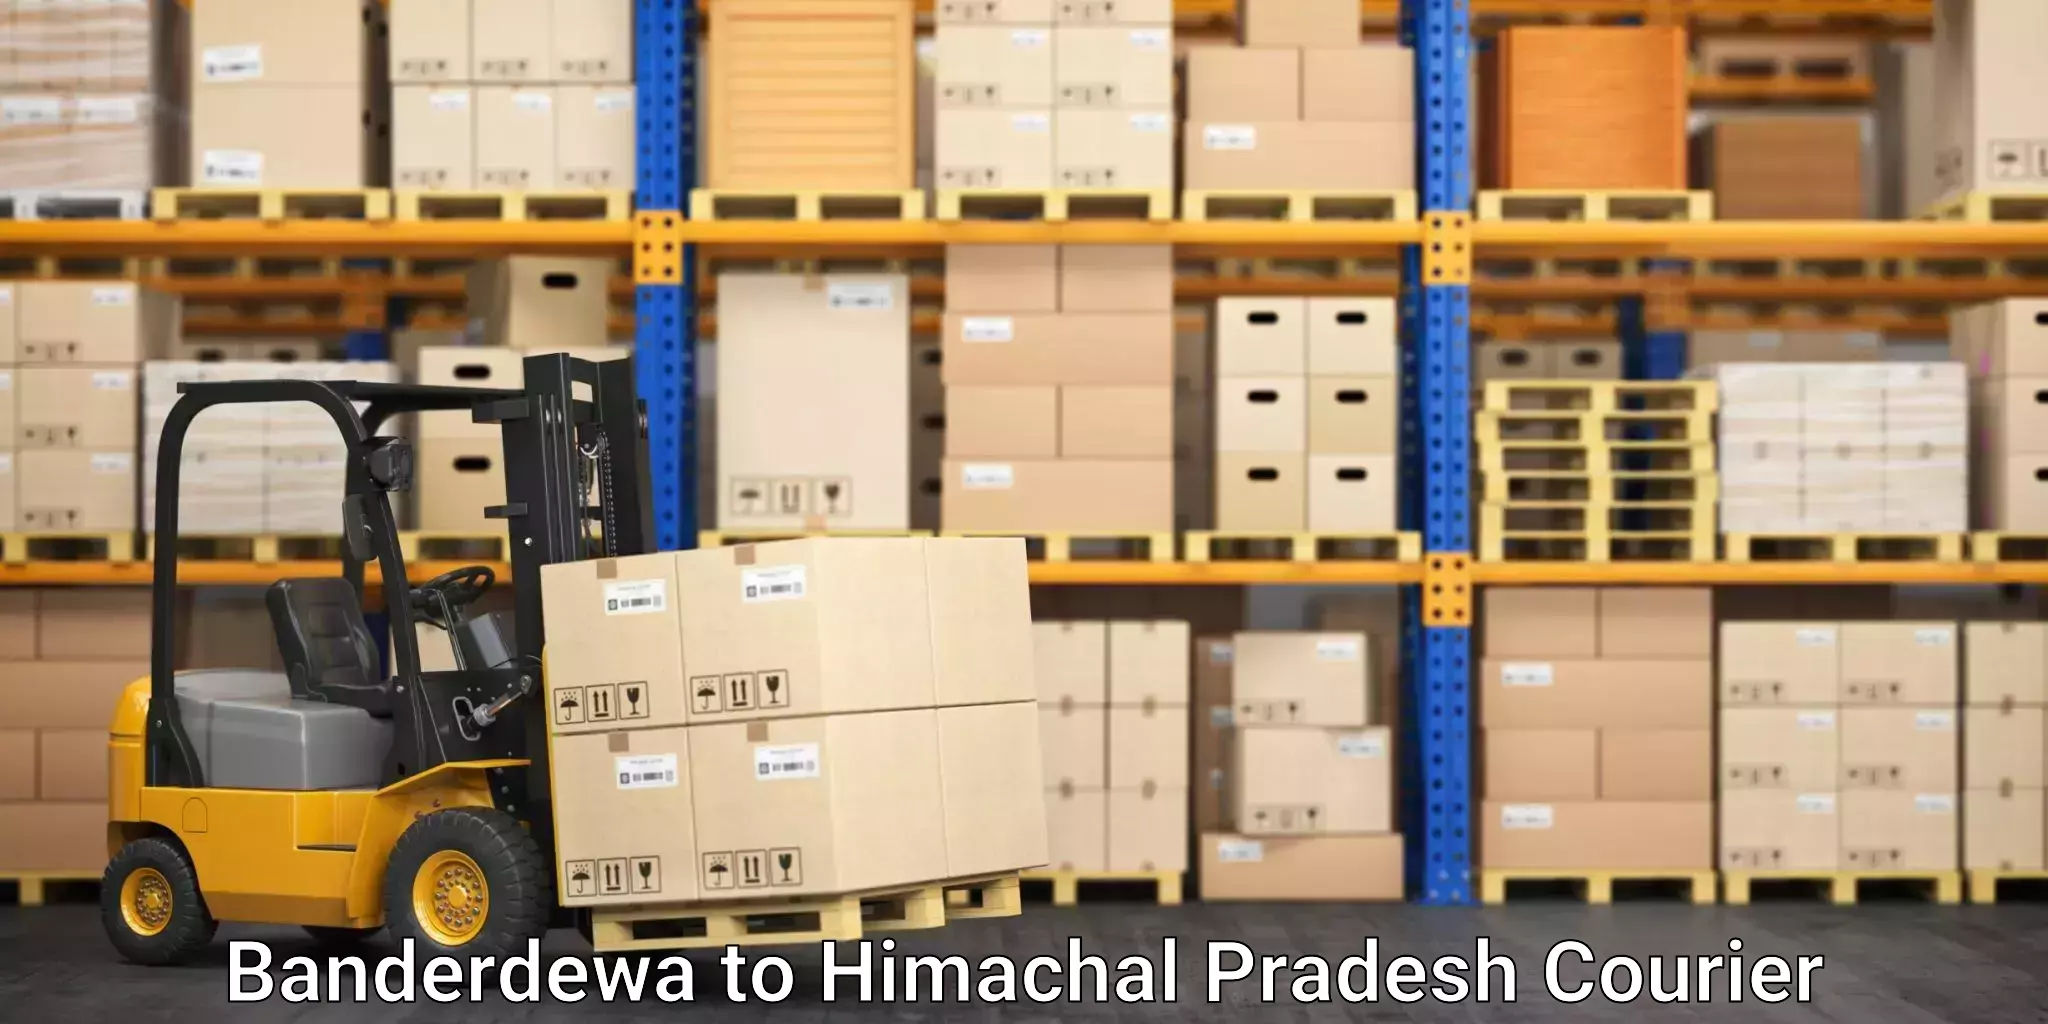 High-speed parcel service Banderdewa to Kotkhai